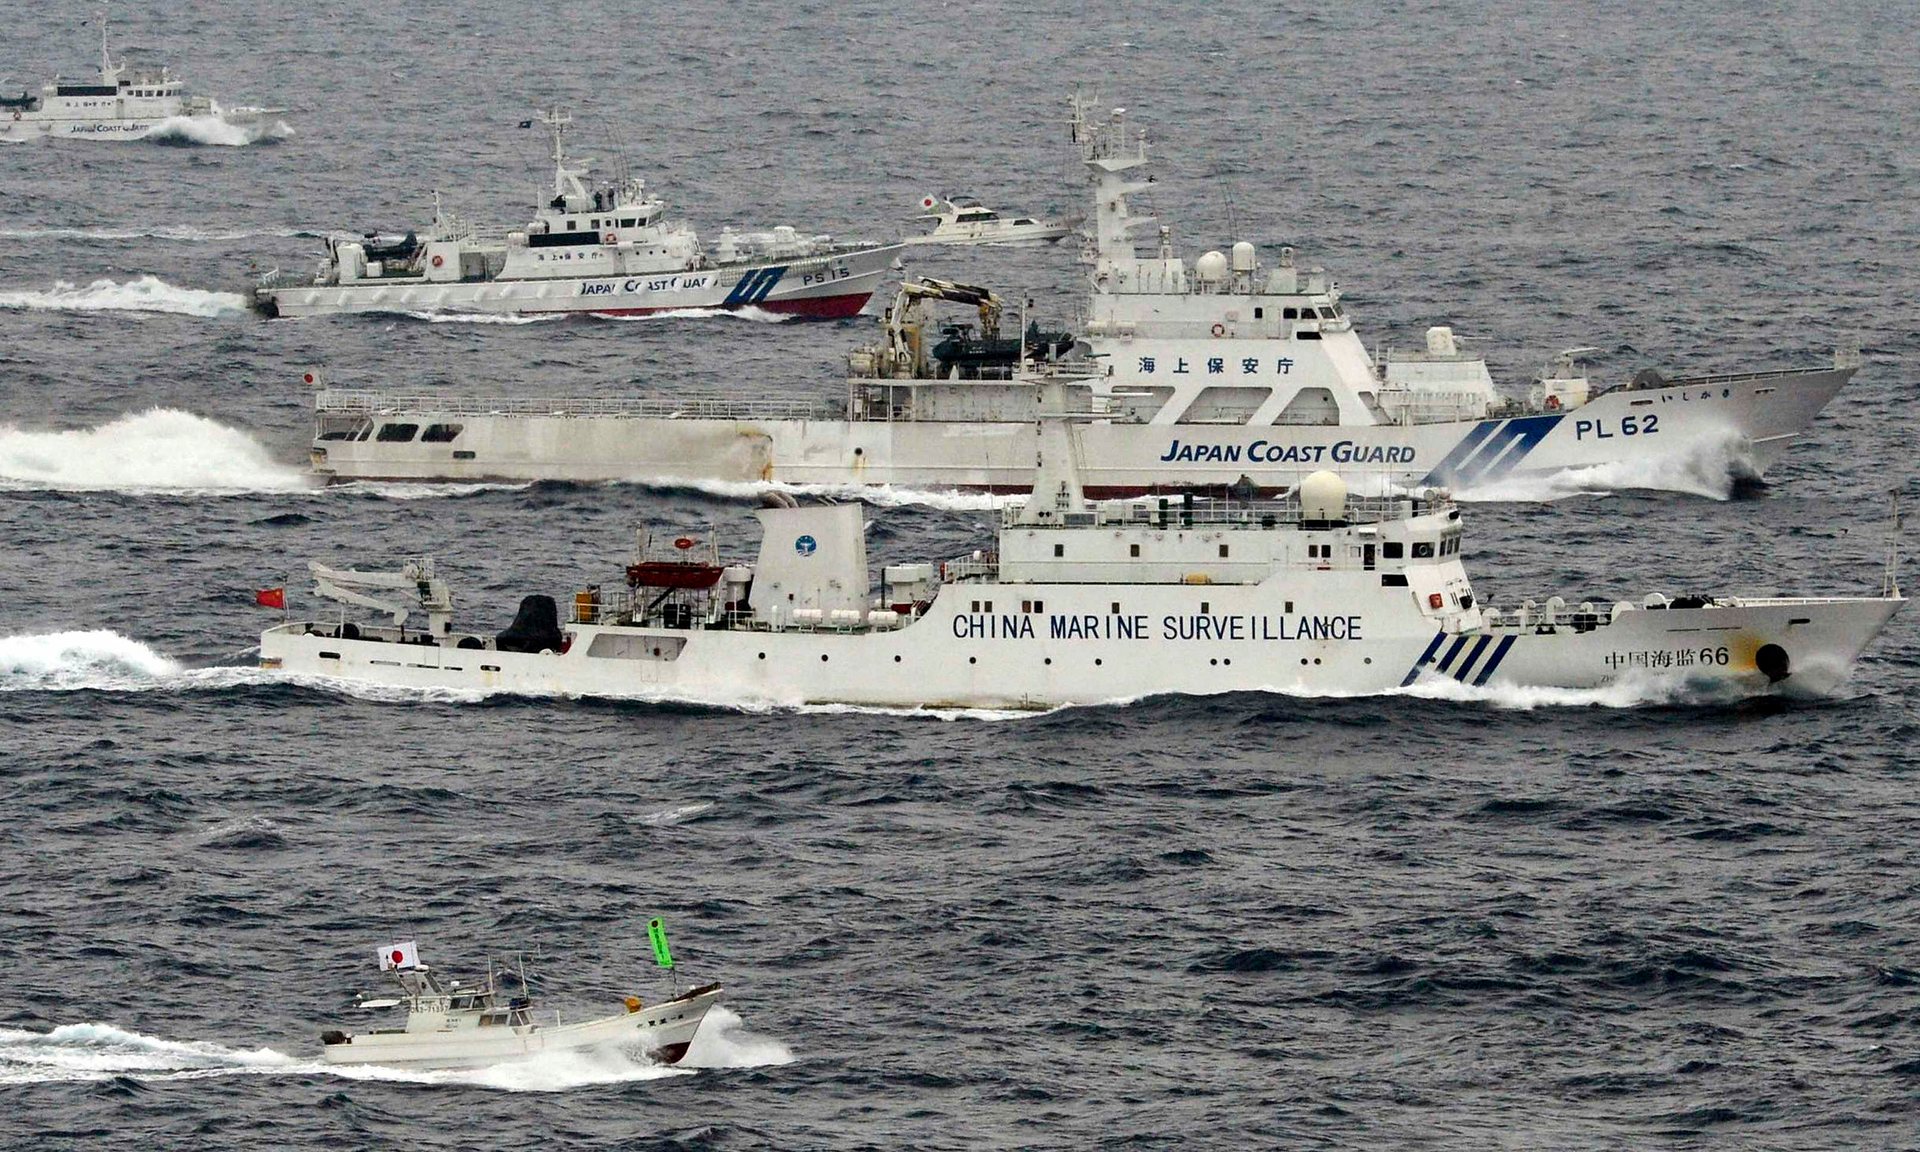 Tàu tuần duyên của Nhật theo sát một chiếc tàu của Trung Quốc trên biển Hoa Đông trong bức ảnh chụp năm 2013 - ảnh: Kyodo